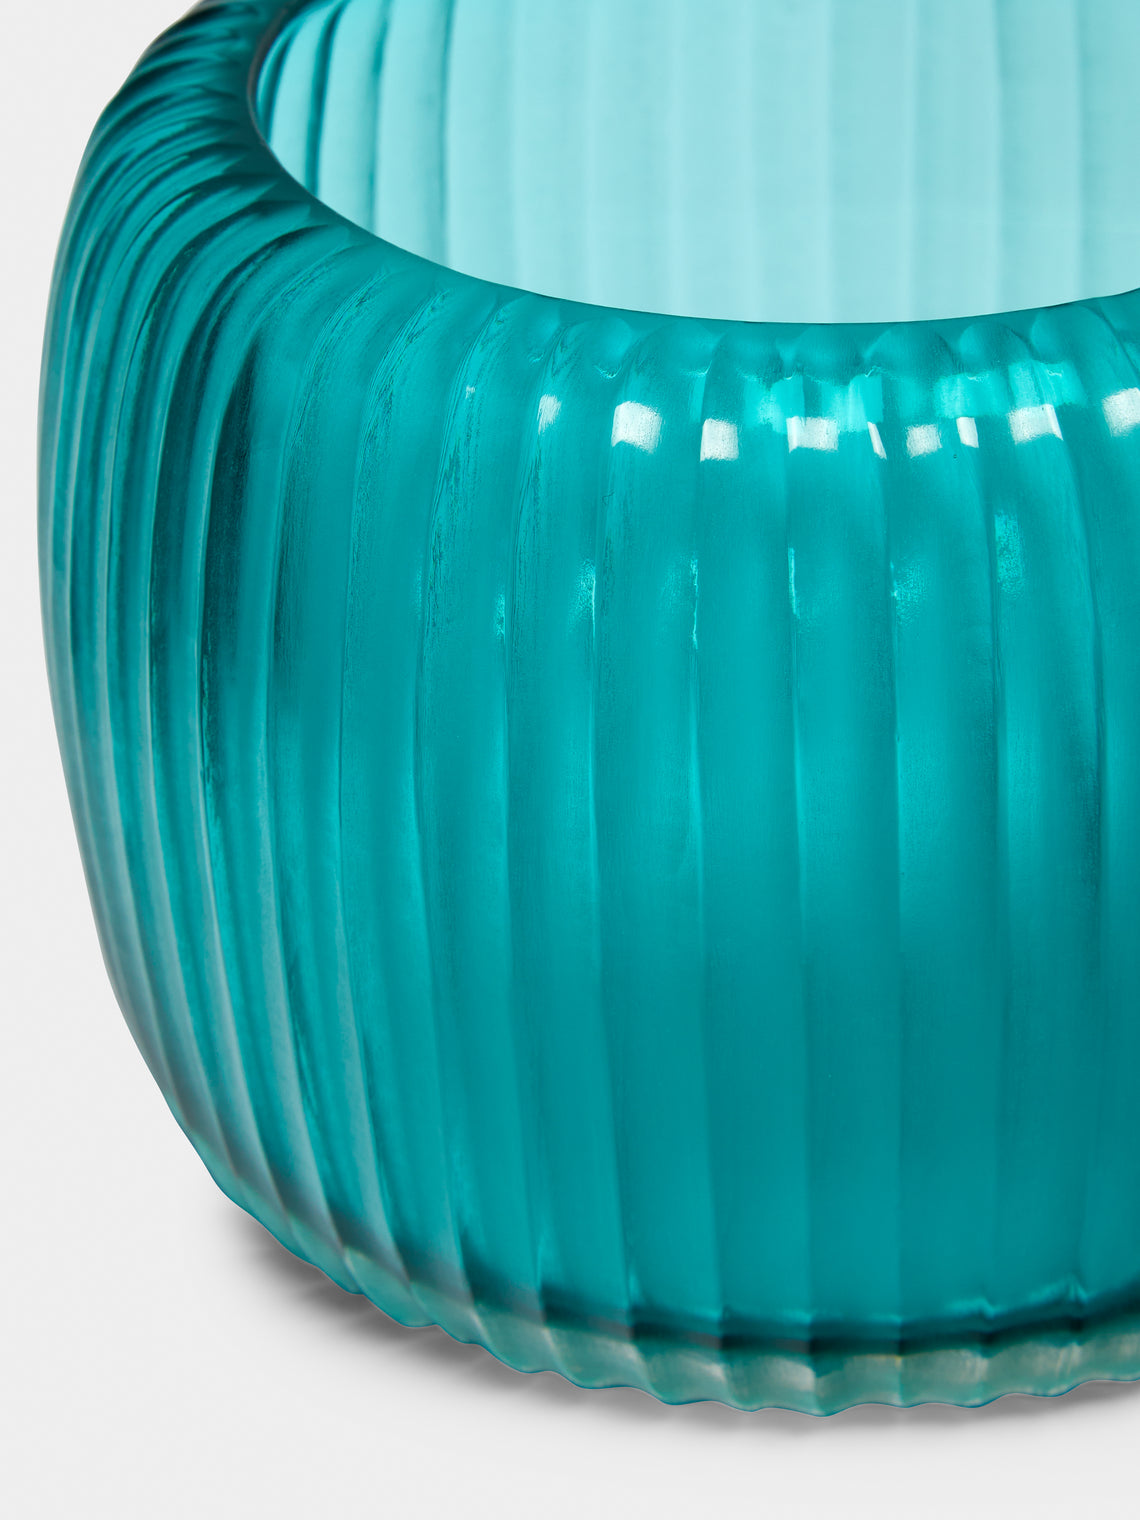 Micheluzzi Glass - Pozzo Acqua Hand-Blown Murano Glass Vase - Teal - ABASK